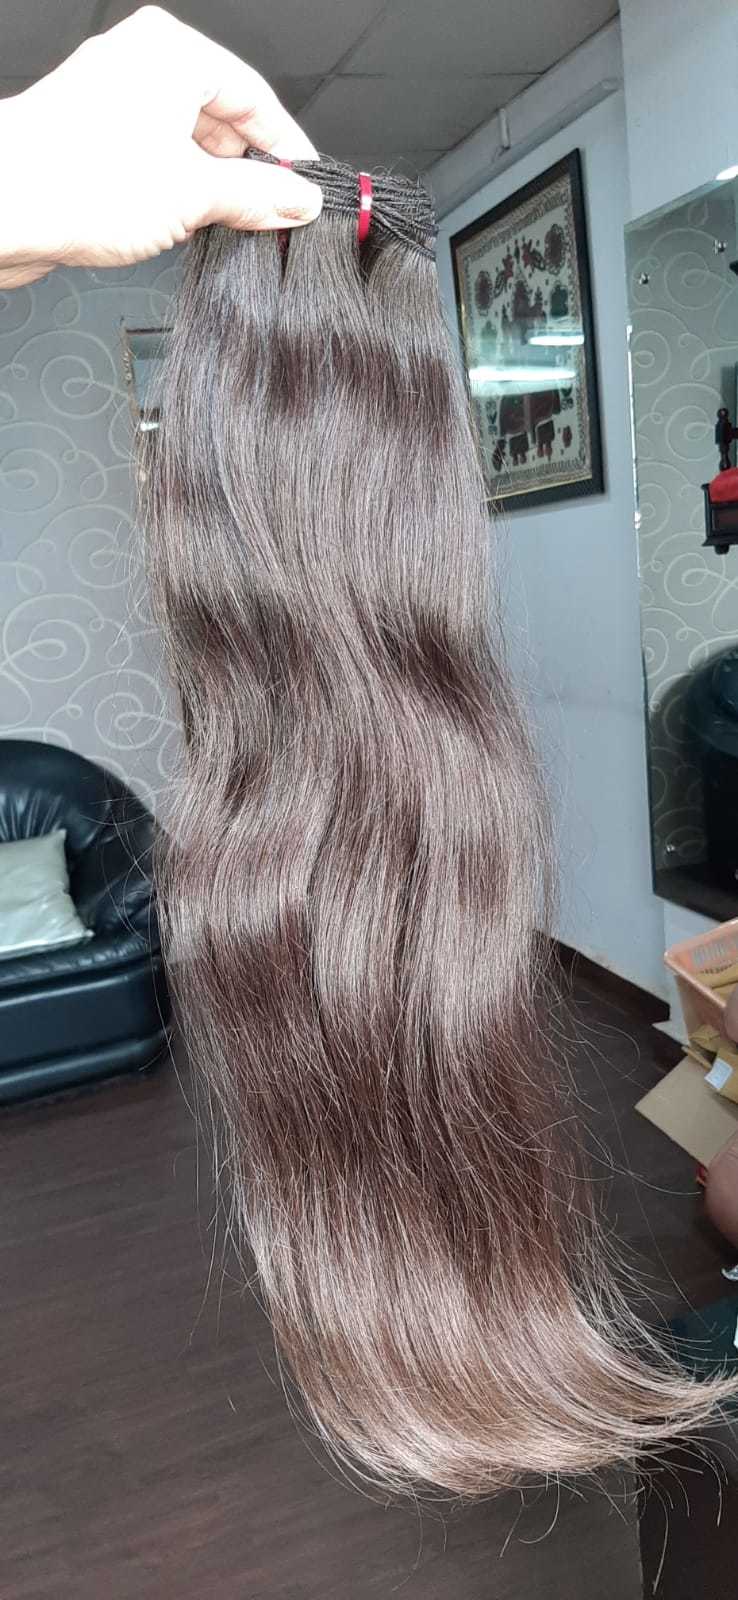 Straight Shiny Hair